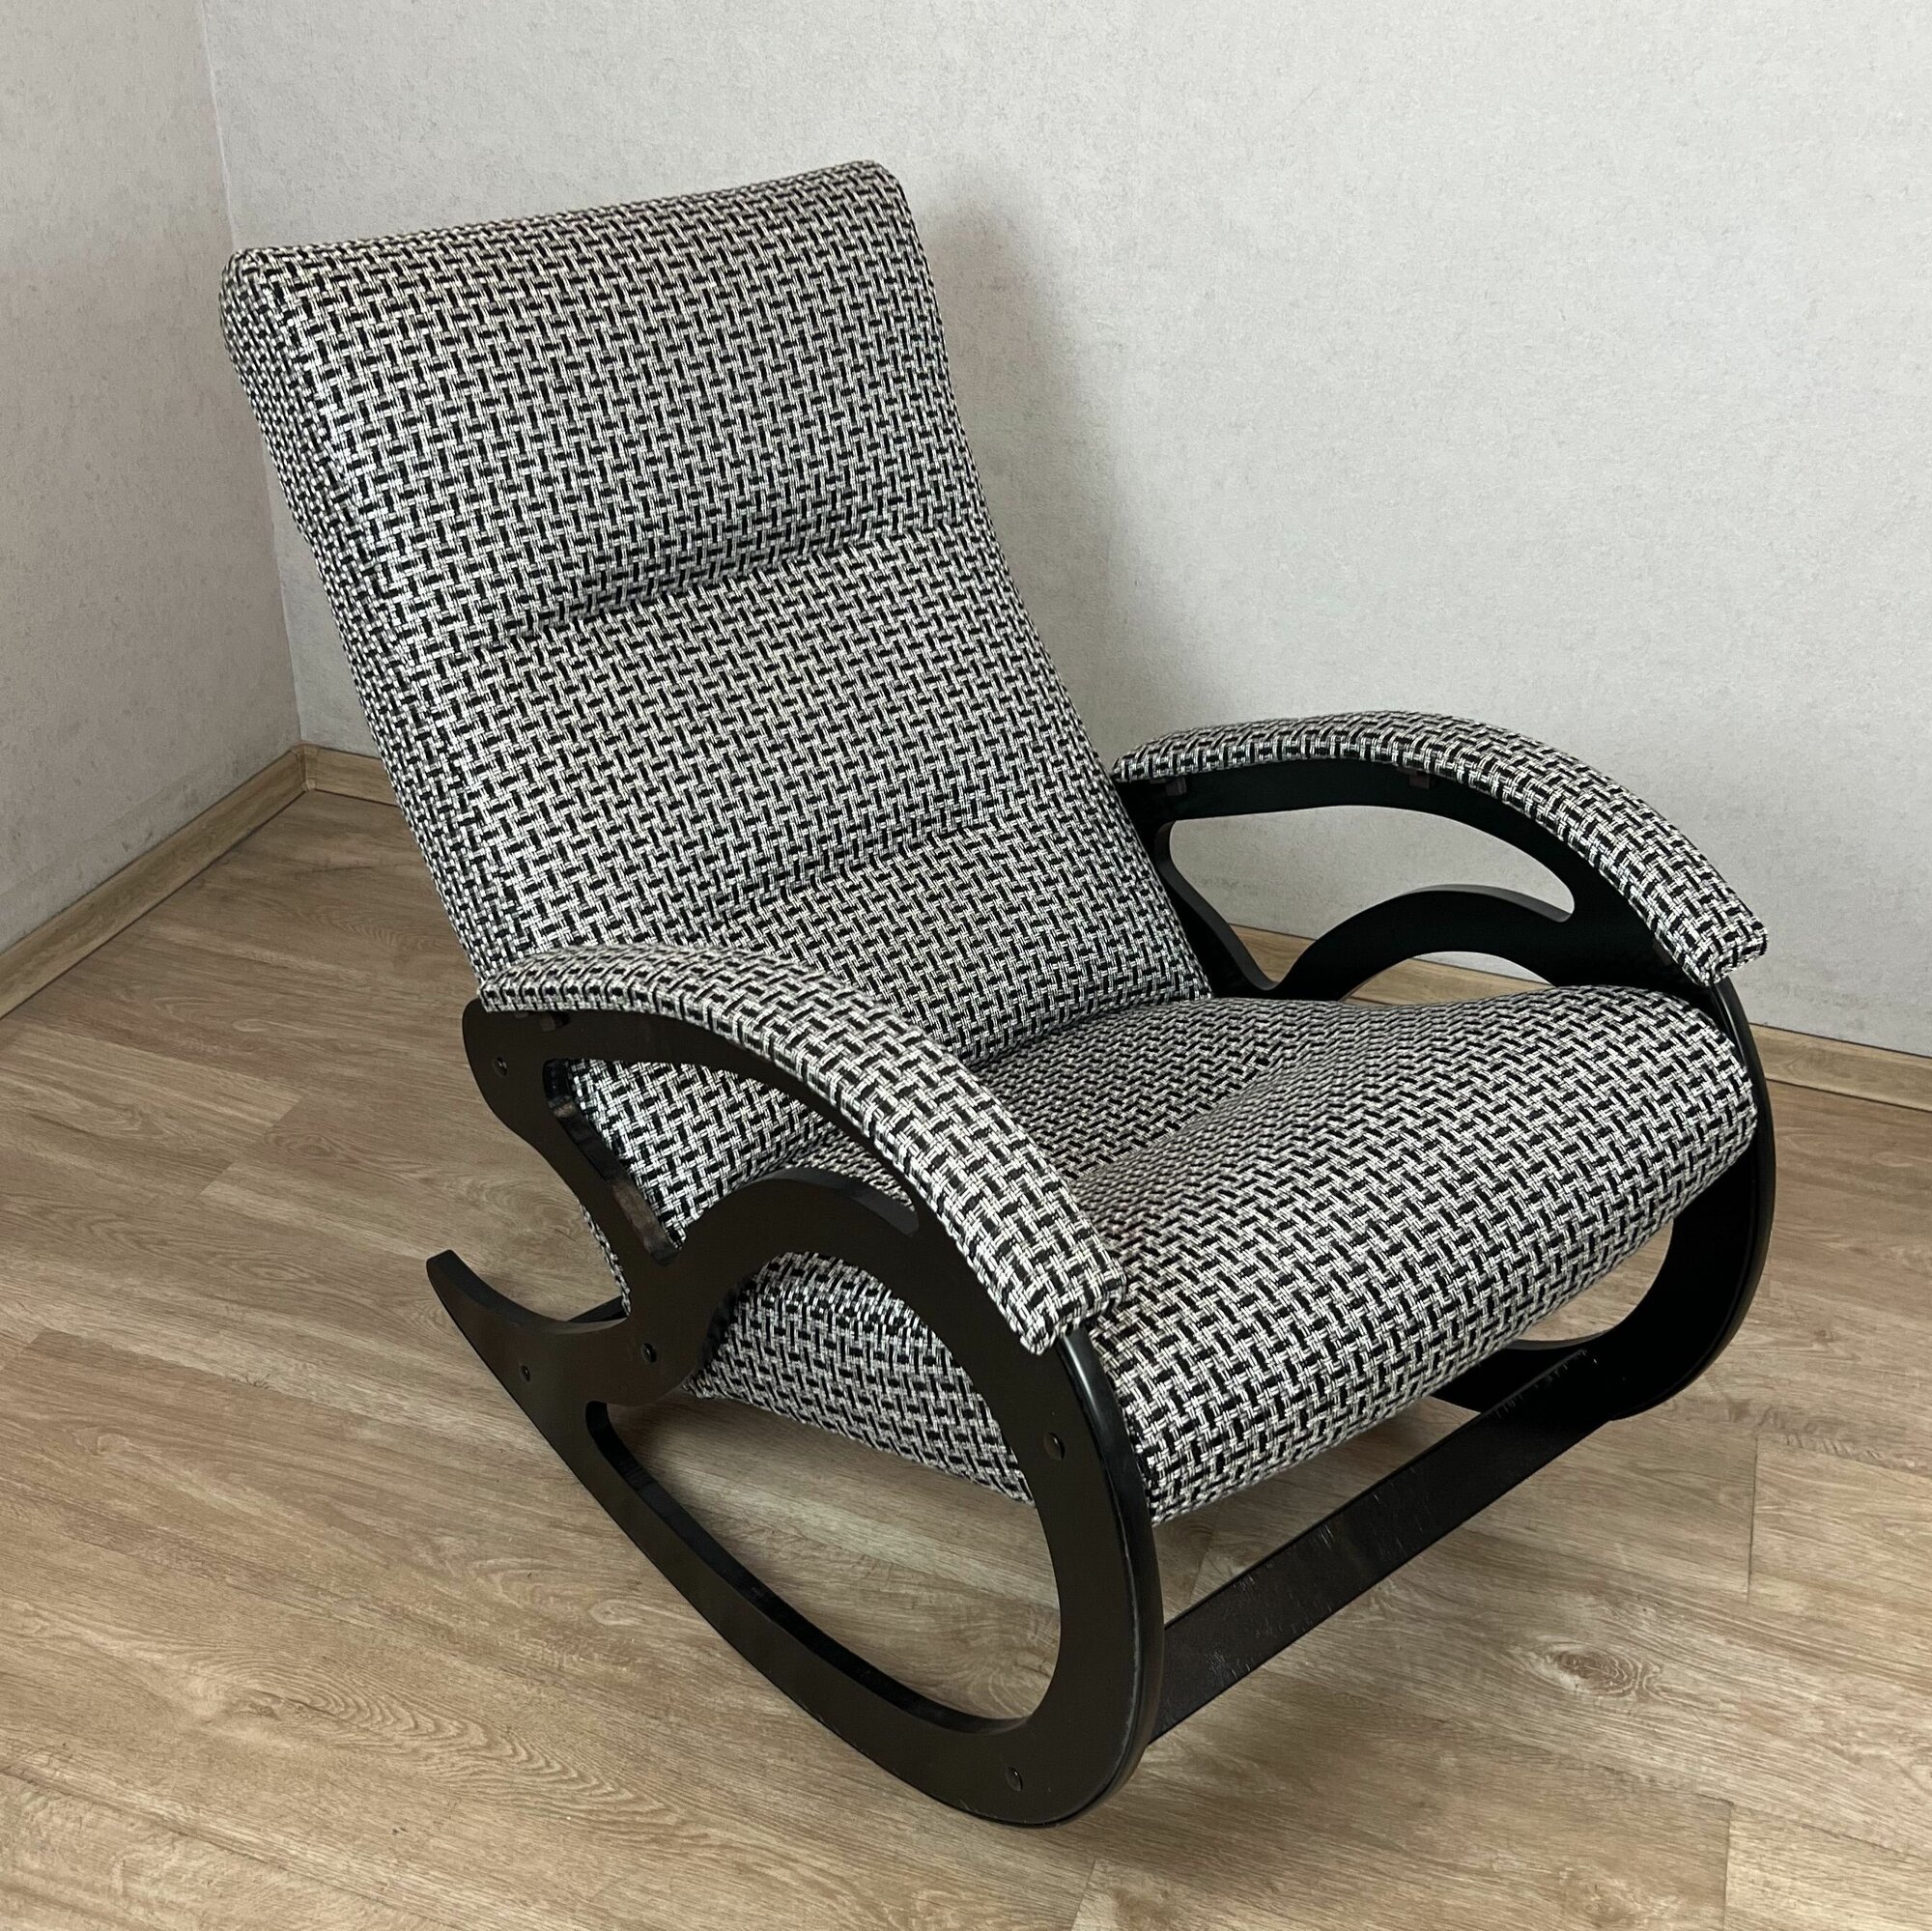 Кресло-качалка классическое "Классика" для дома и дачи, обивка из рогожки, цвет серый